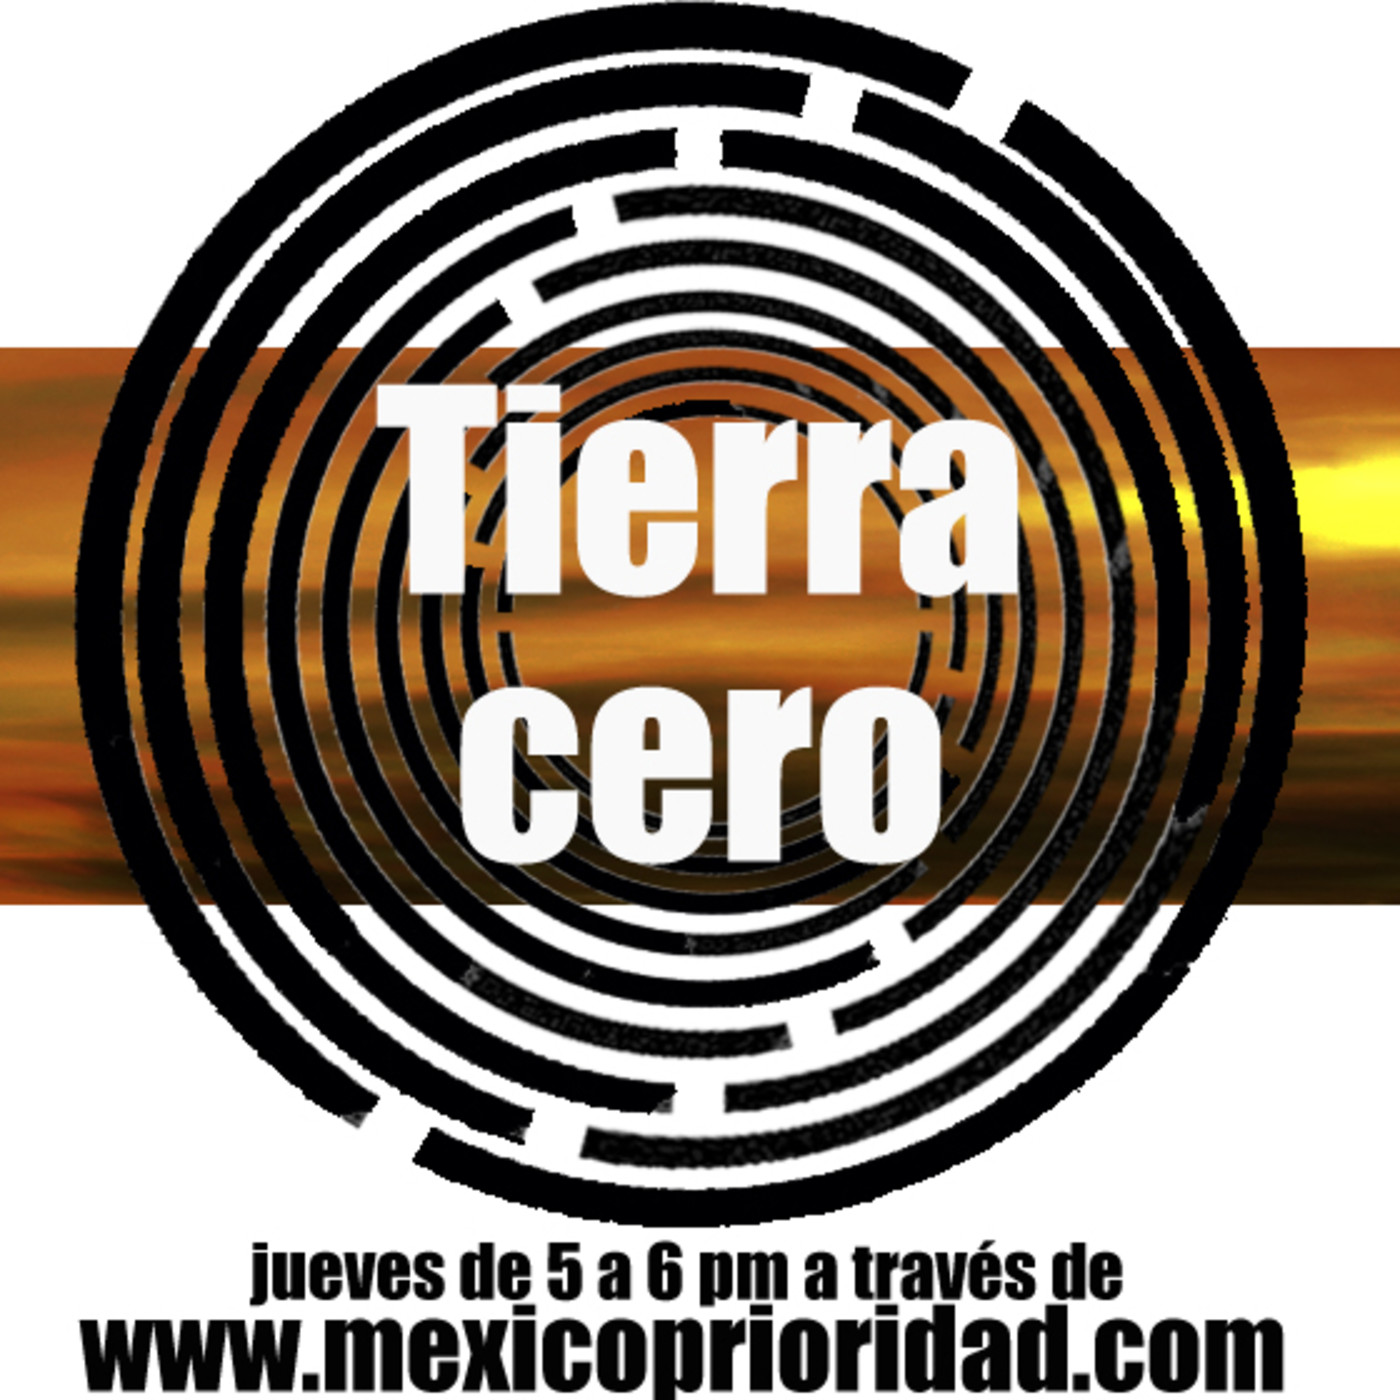 Tierra Cero 07 Marzo 2019 "Taller de Fotografía Estenopeica y Exposición Cuerpo Patria Mia"